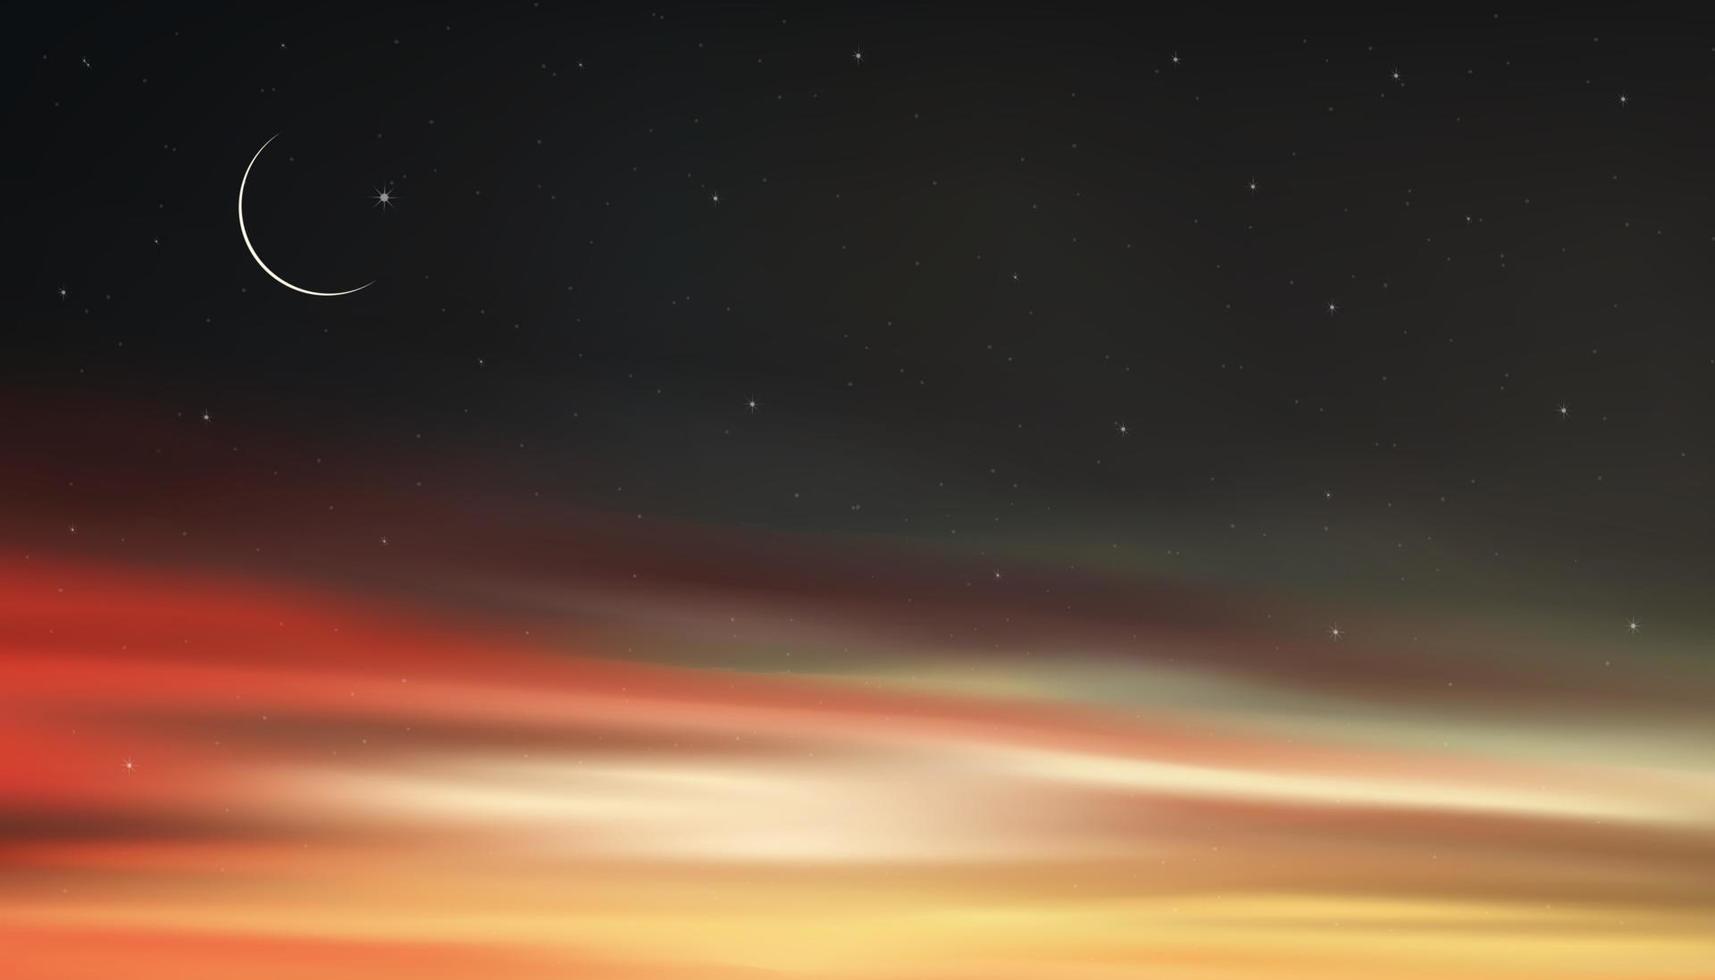 cielo nocturno con luna creciente y estrellas brillando, paisaje dramático gris drak, rojo y cielo anaranjado, hermoso cielo oscuro y crepúsculo, ilustración vectorial natural para ramadan kareem, fondo eid mubarak vector